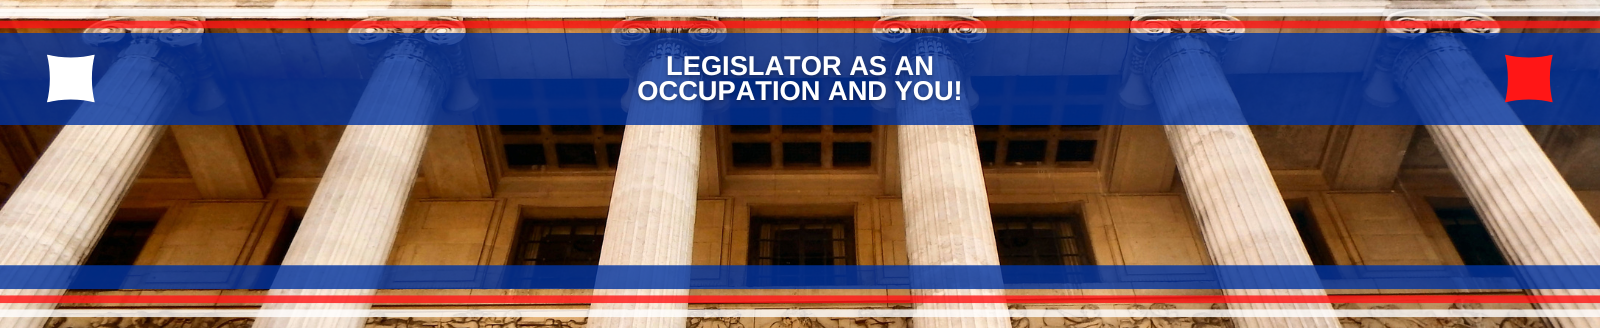 legislation as occupation